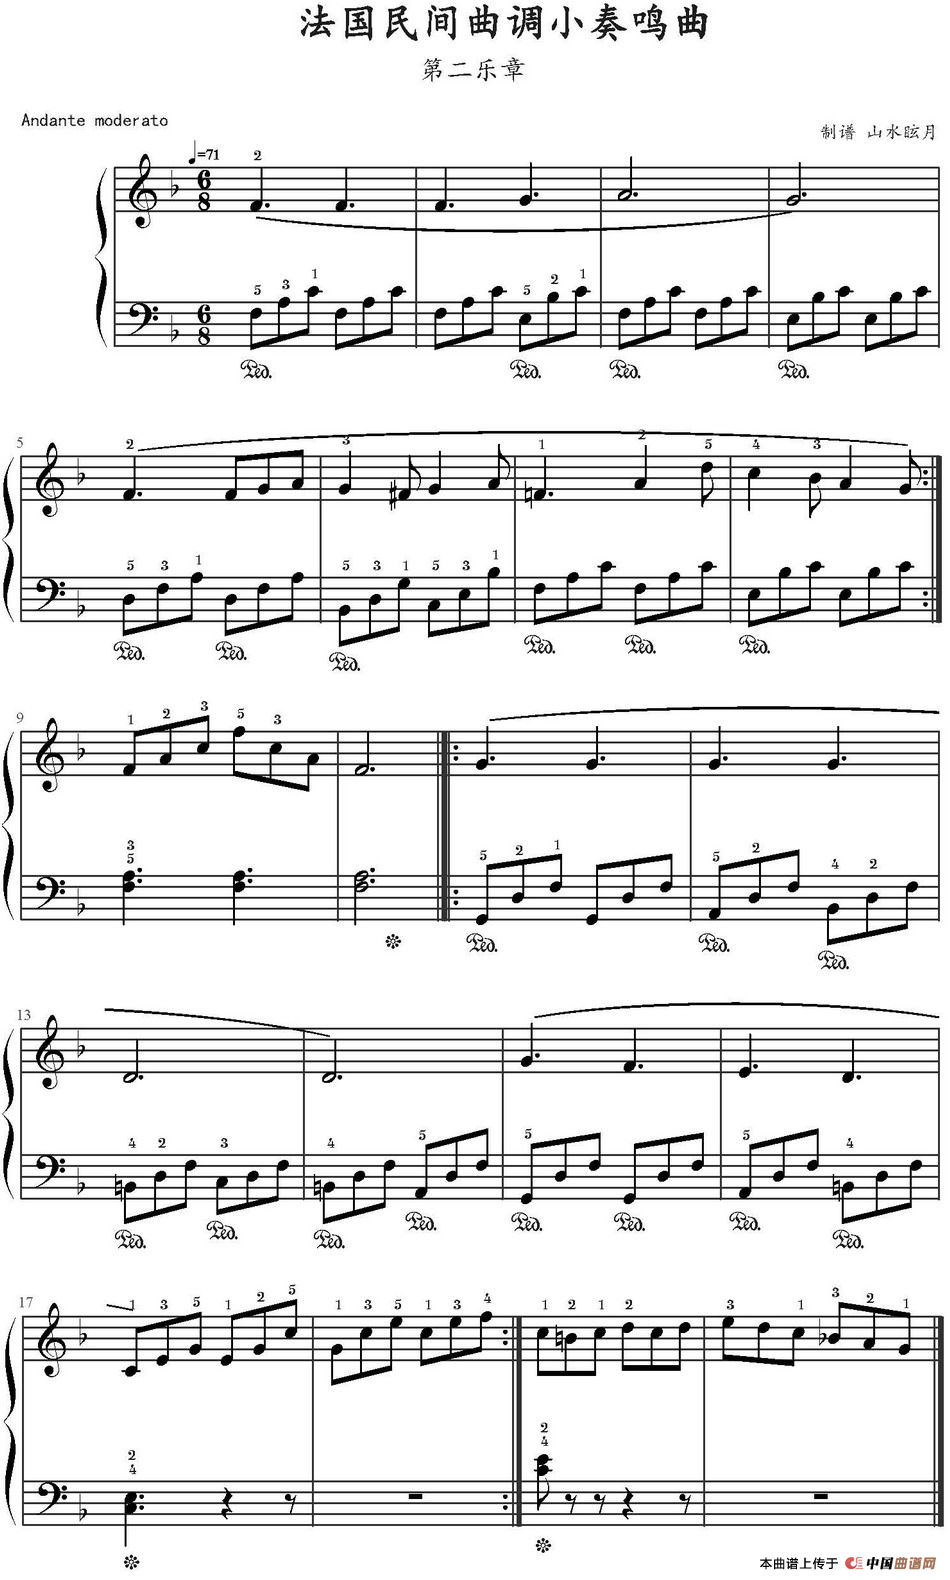 《法国民间曲调小奏鸣曲 第二乐章》钢琴曲谱图分享